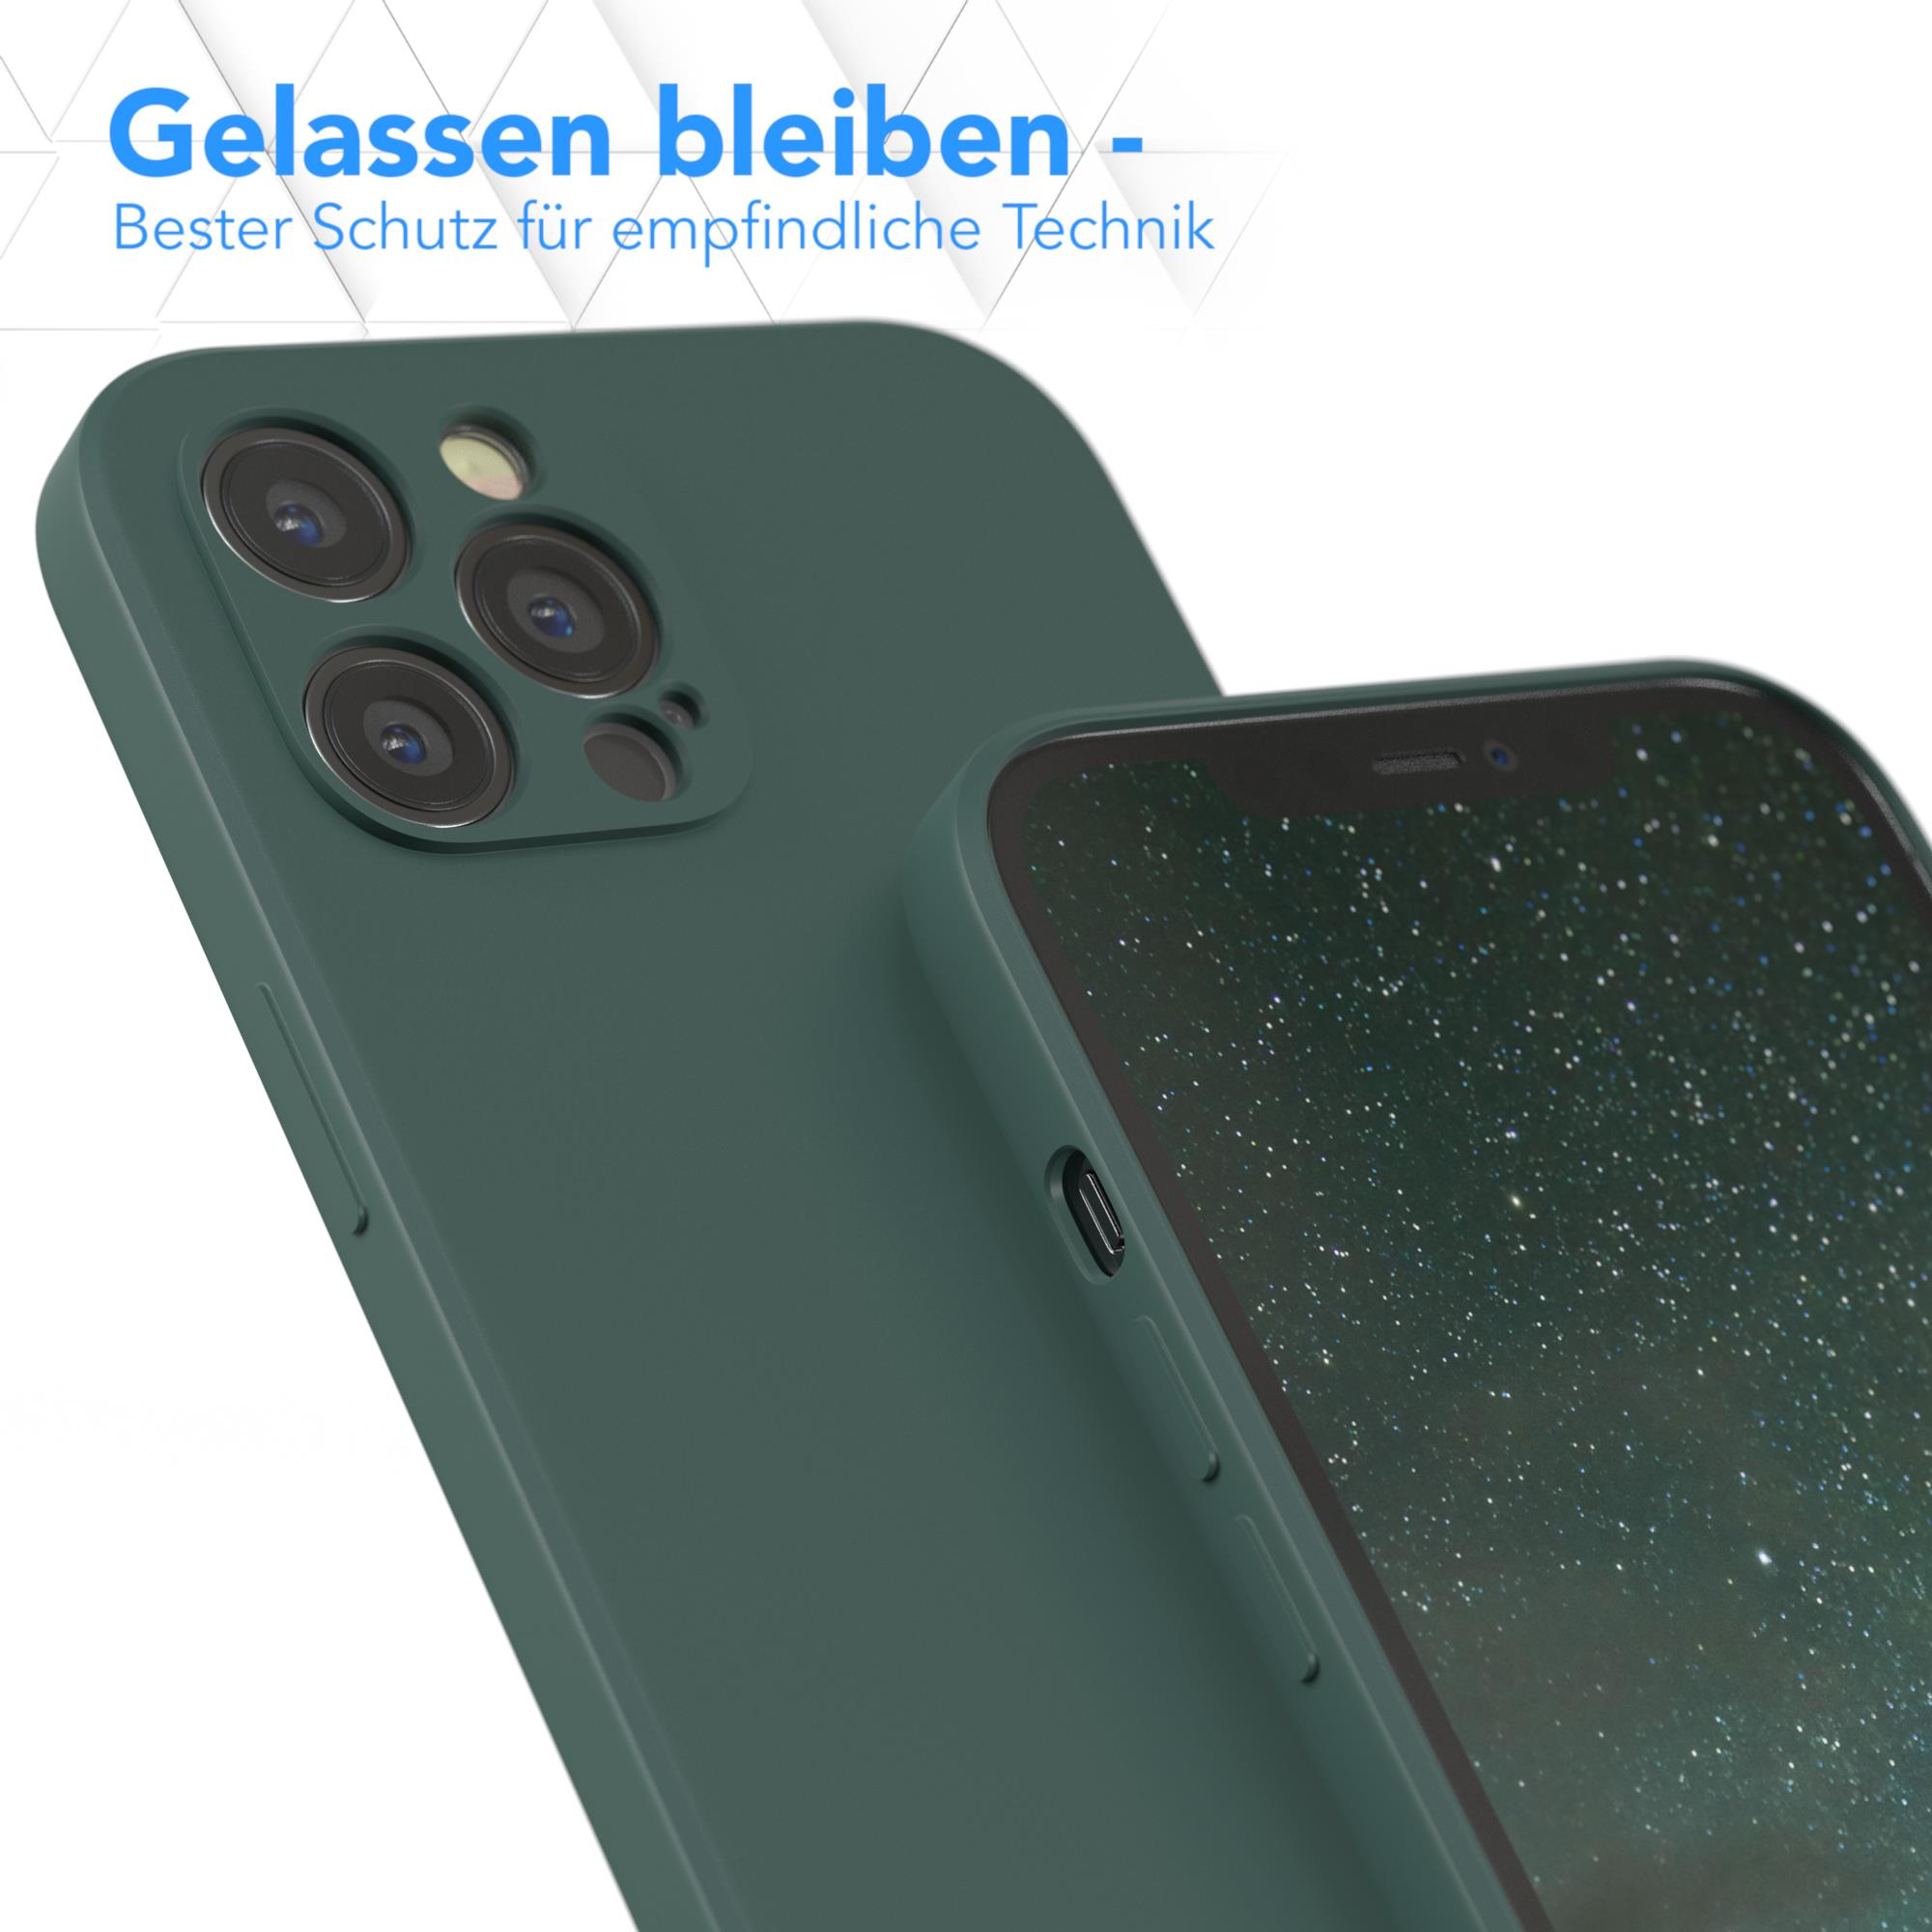 EAZY CASE TPU Pro iPhone / Handycase 12 Apple, Grün Matt, Backcover, Nachtgrün Max, Silikon